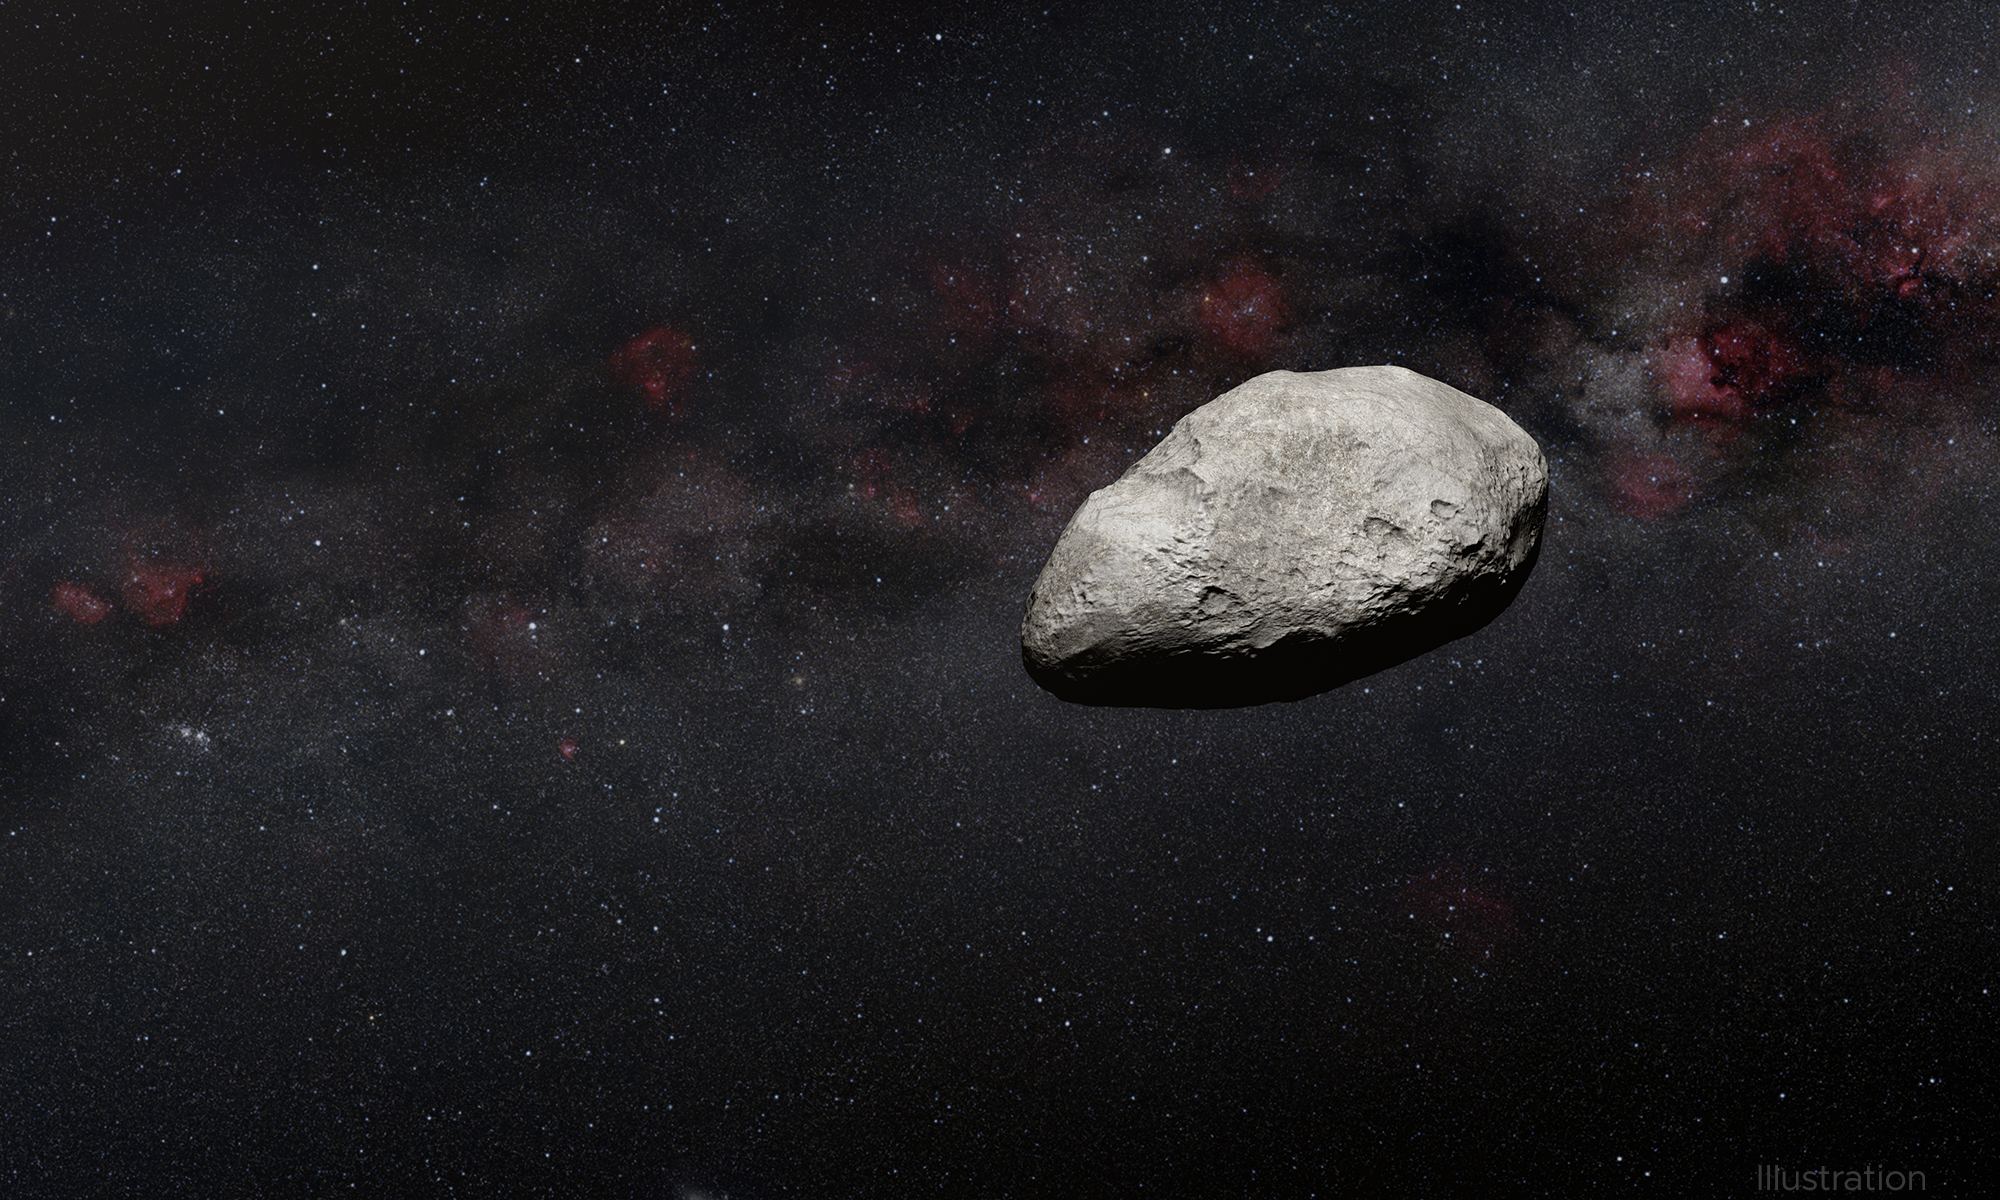 Астероиды существуют, и некоторые из них представляют угрозу для Земли. Как мы отреагируем, когда узнаем, что один из них приближается к нам?